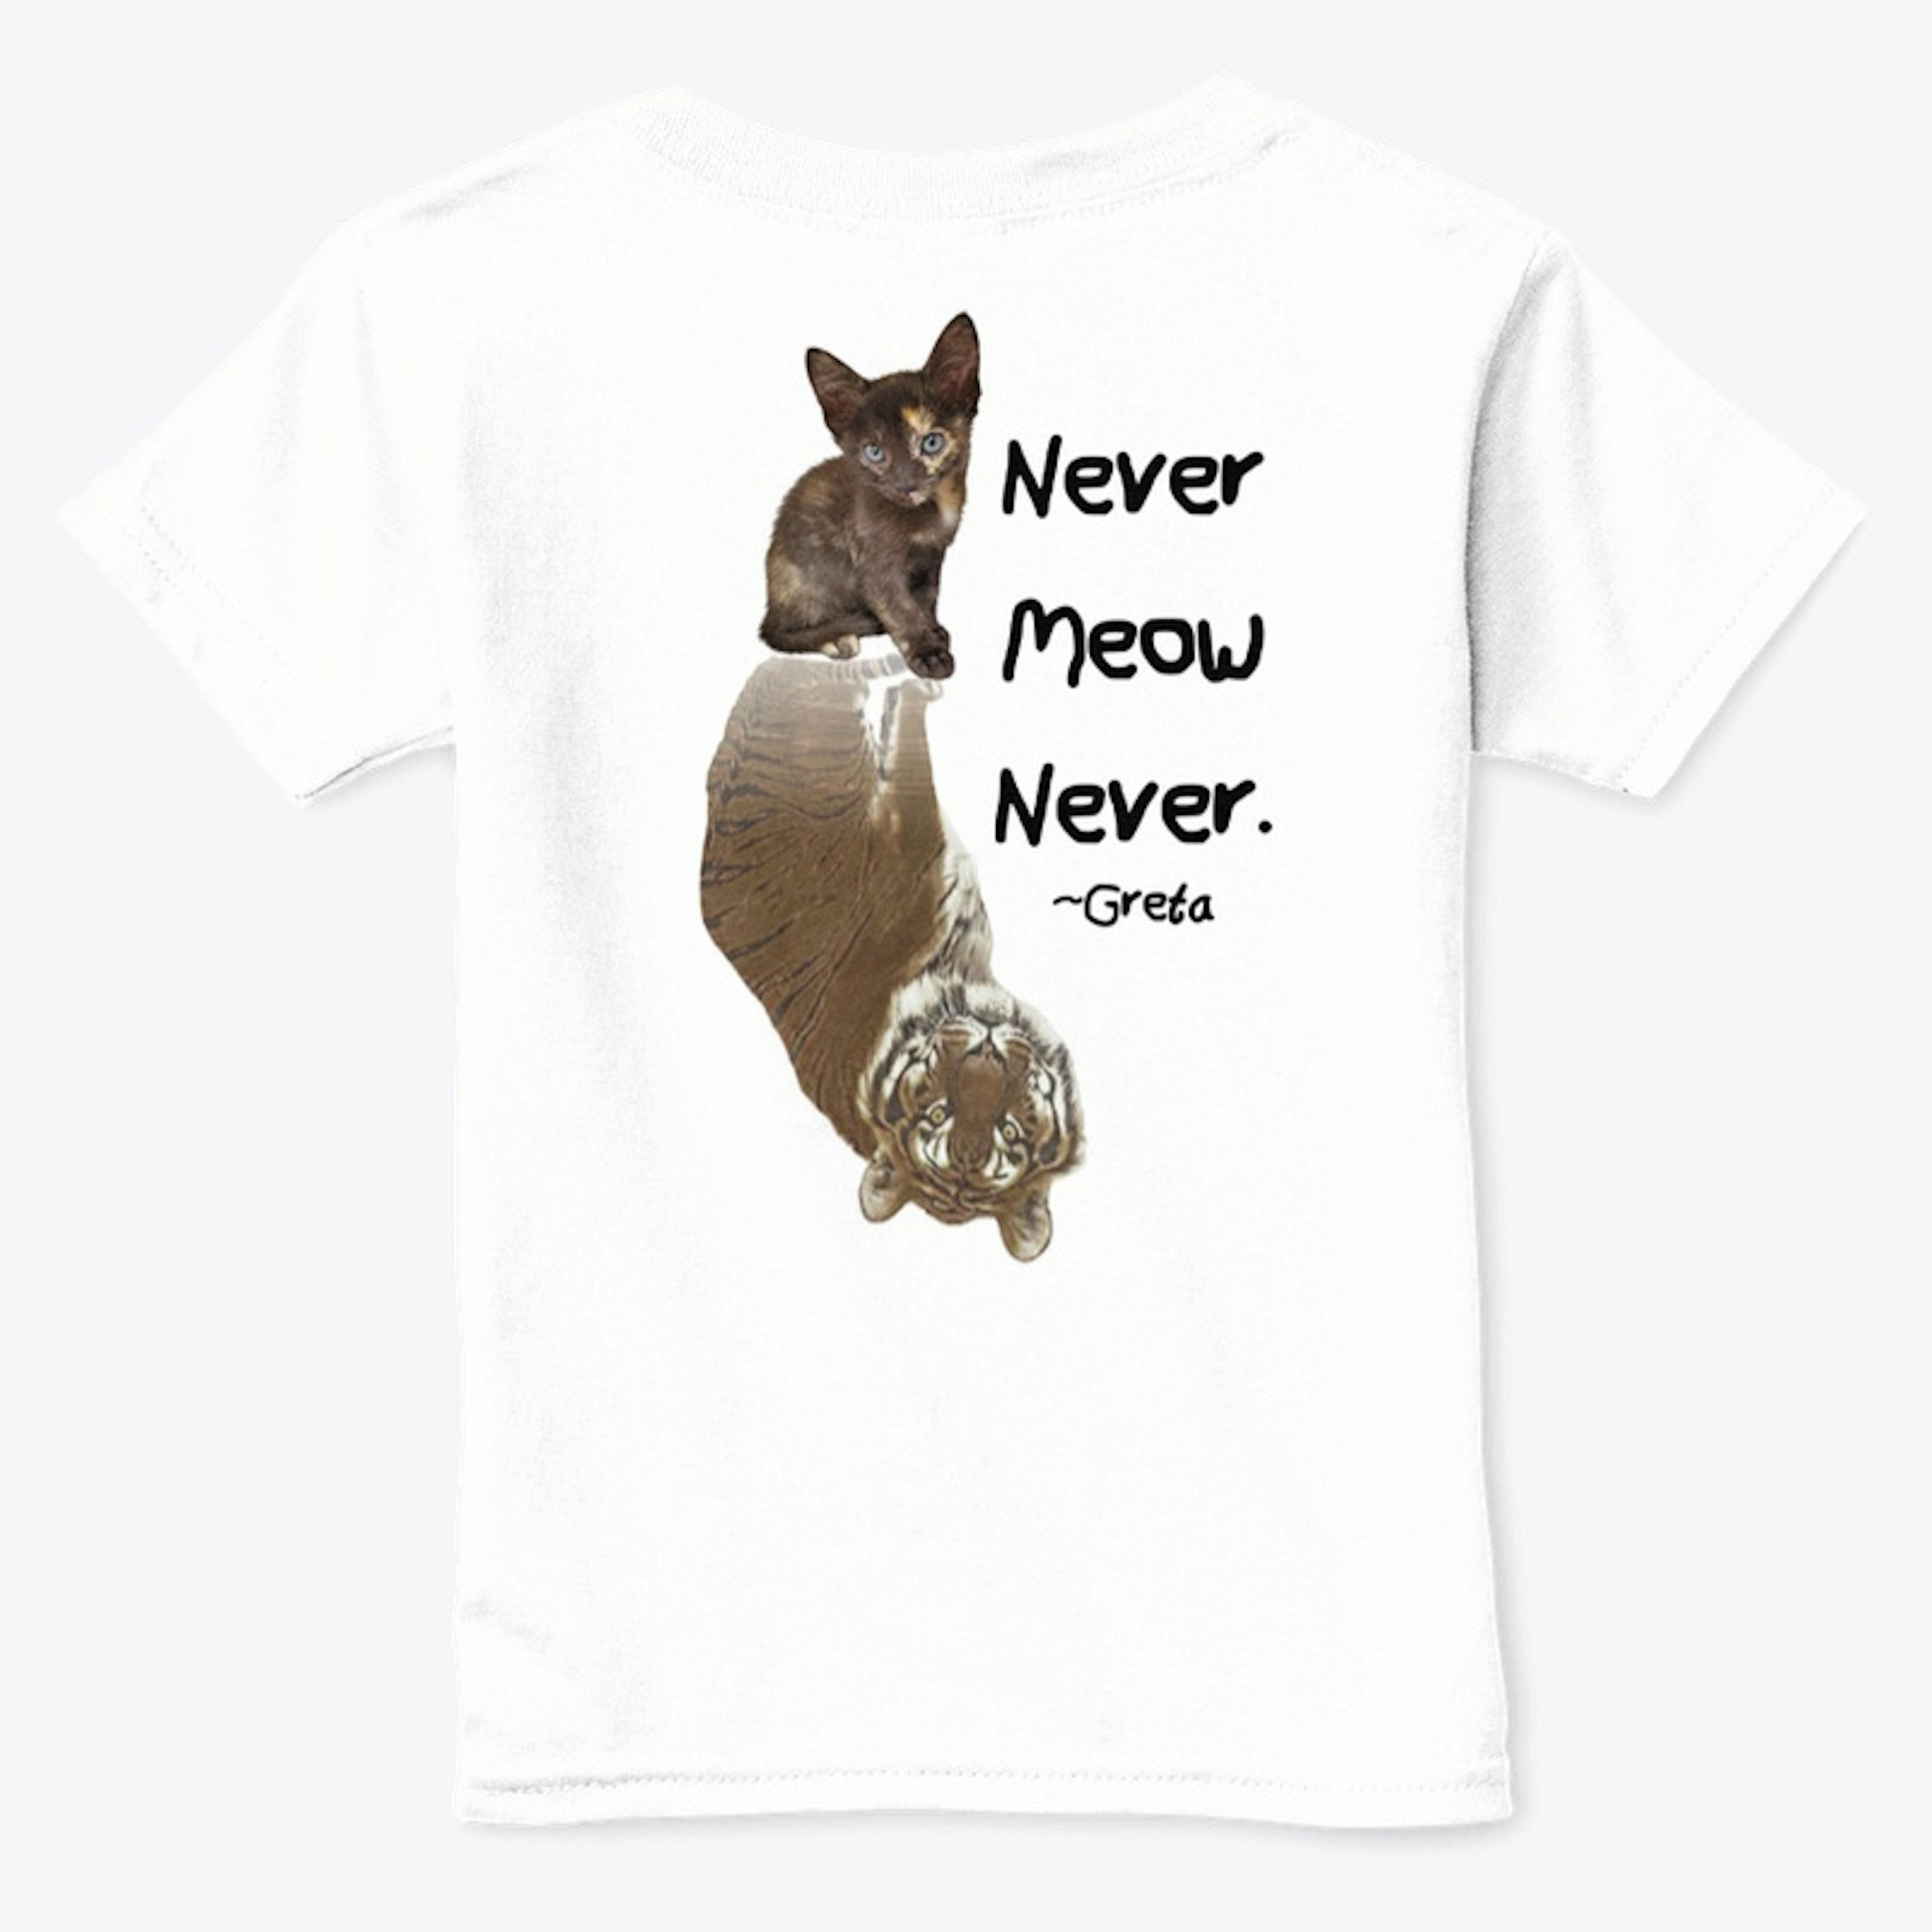 "Never Say Never" - Greta